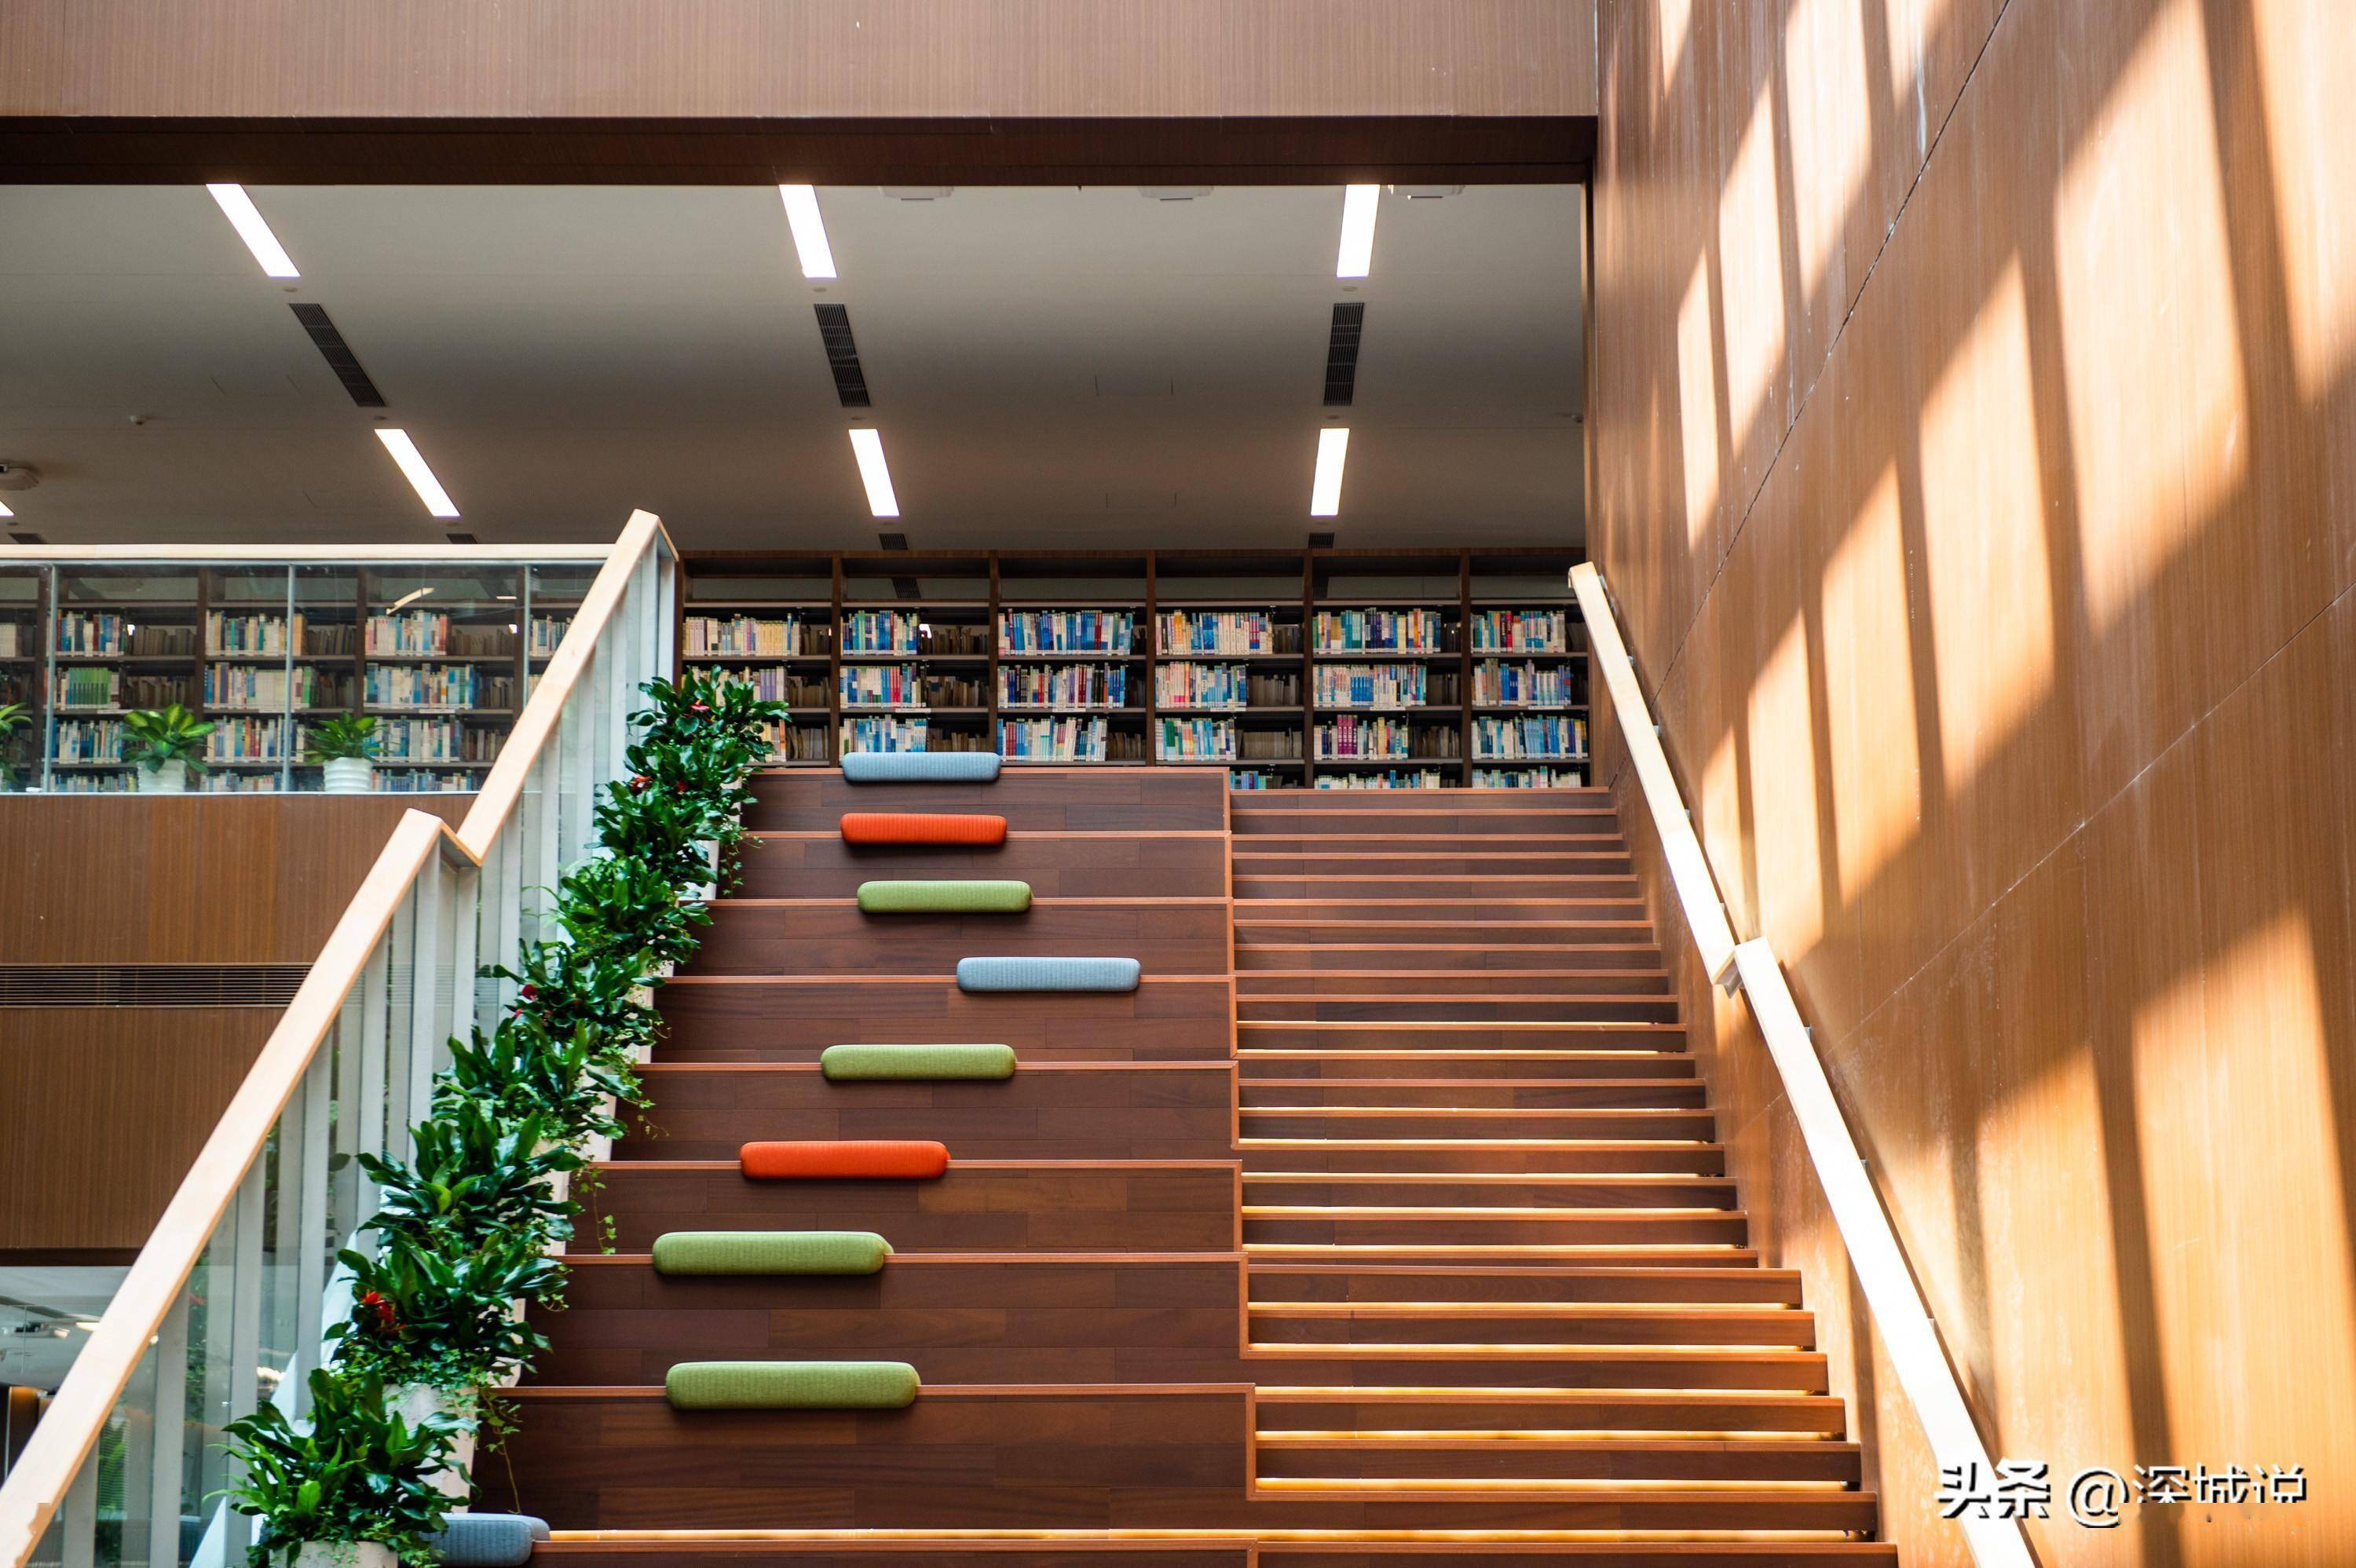 深圳大学丽湖校区中央图书馆亮相!这样的环境你爱了吗?